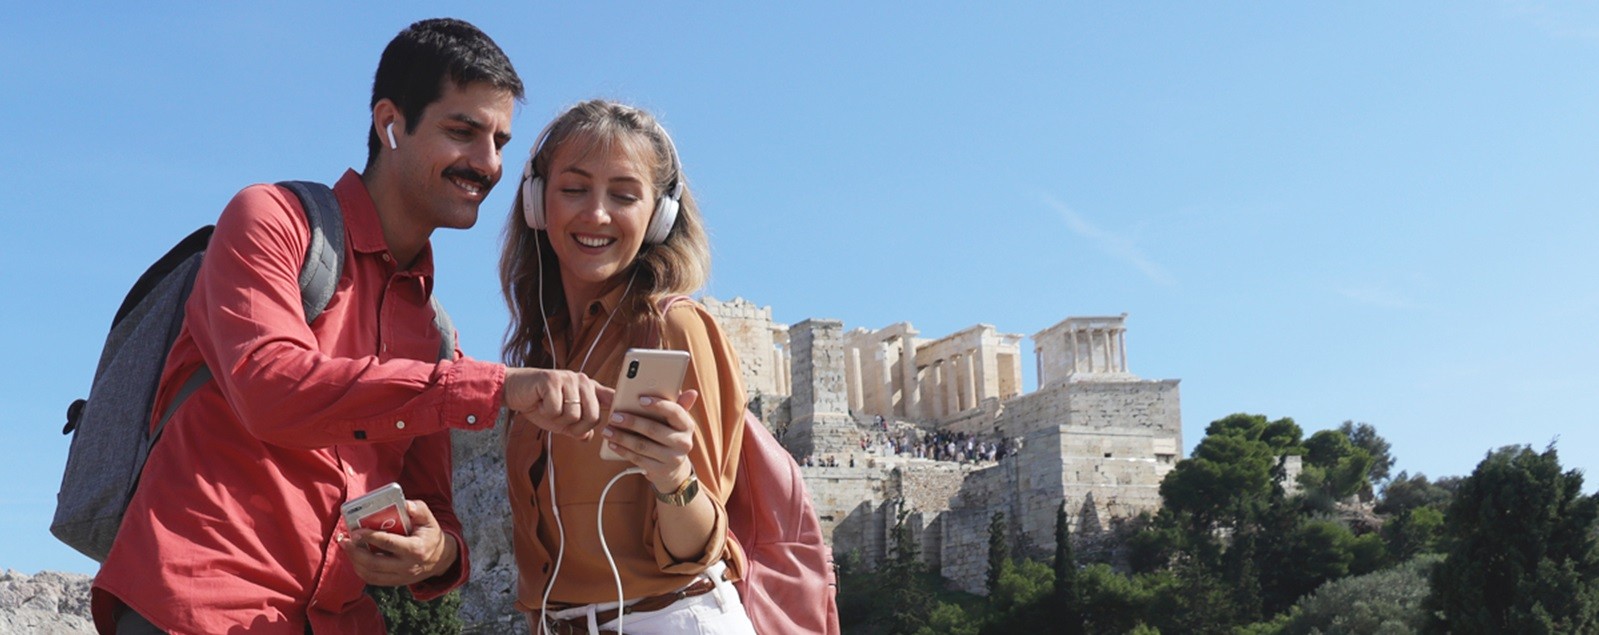 Athens Ticket Pass: Acropolis & 6 Sites with Audio Tours